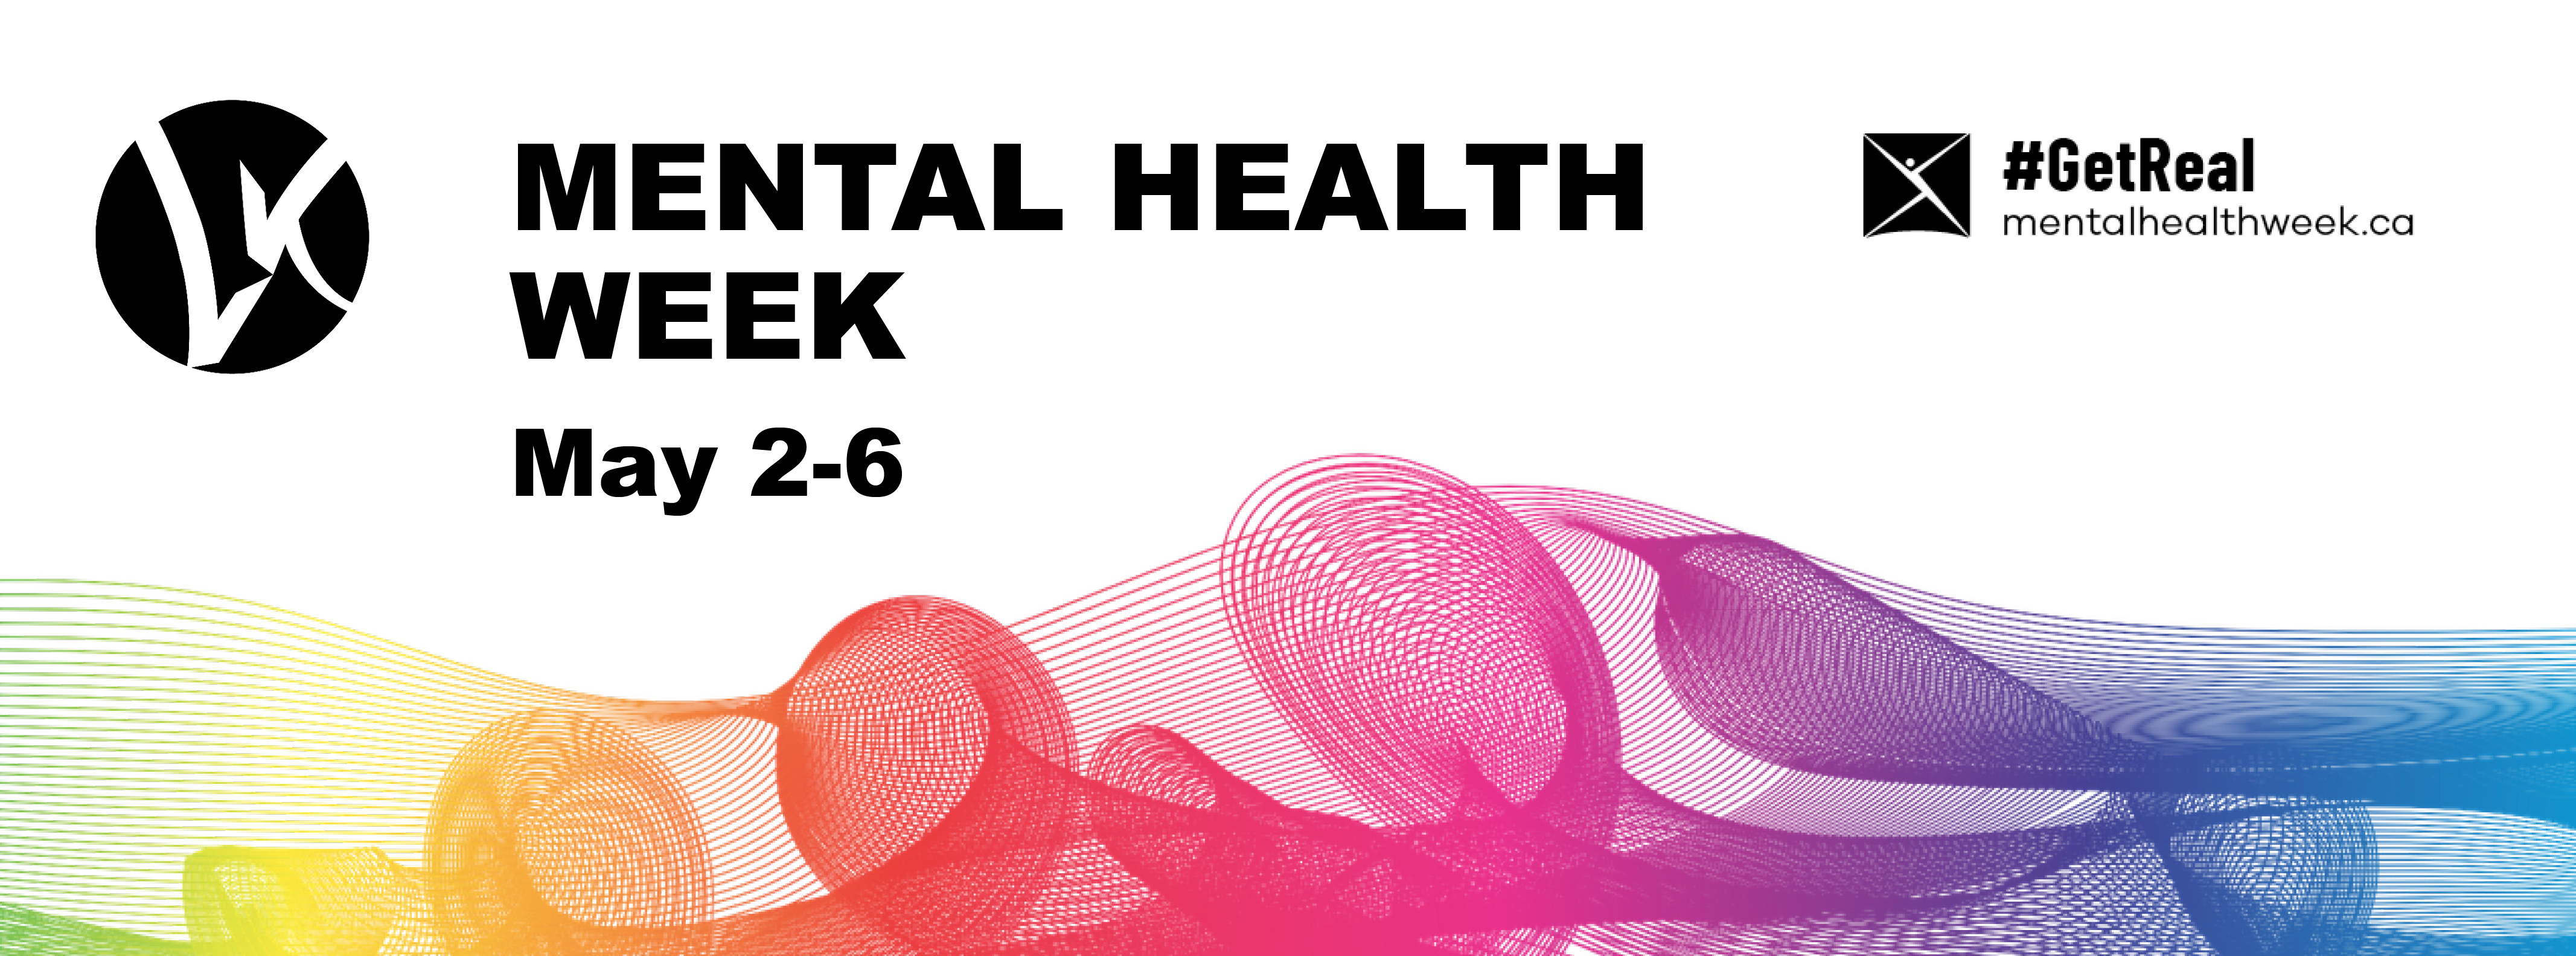 Mental Health Week - website banner.png